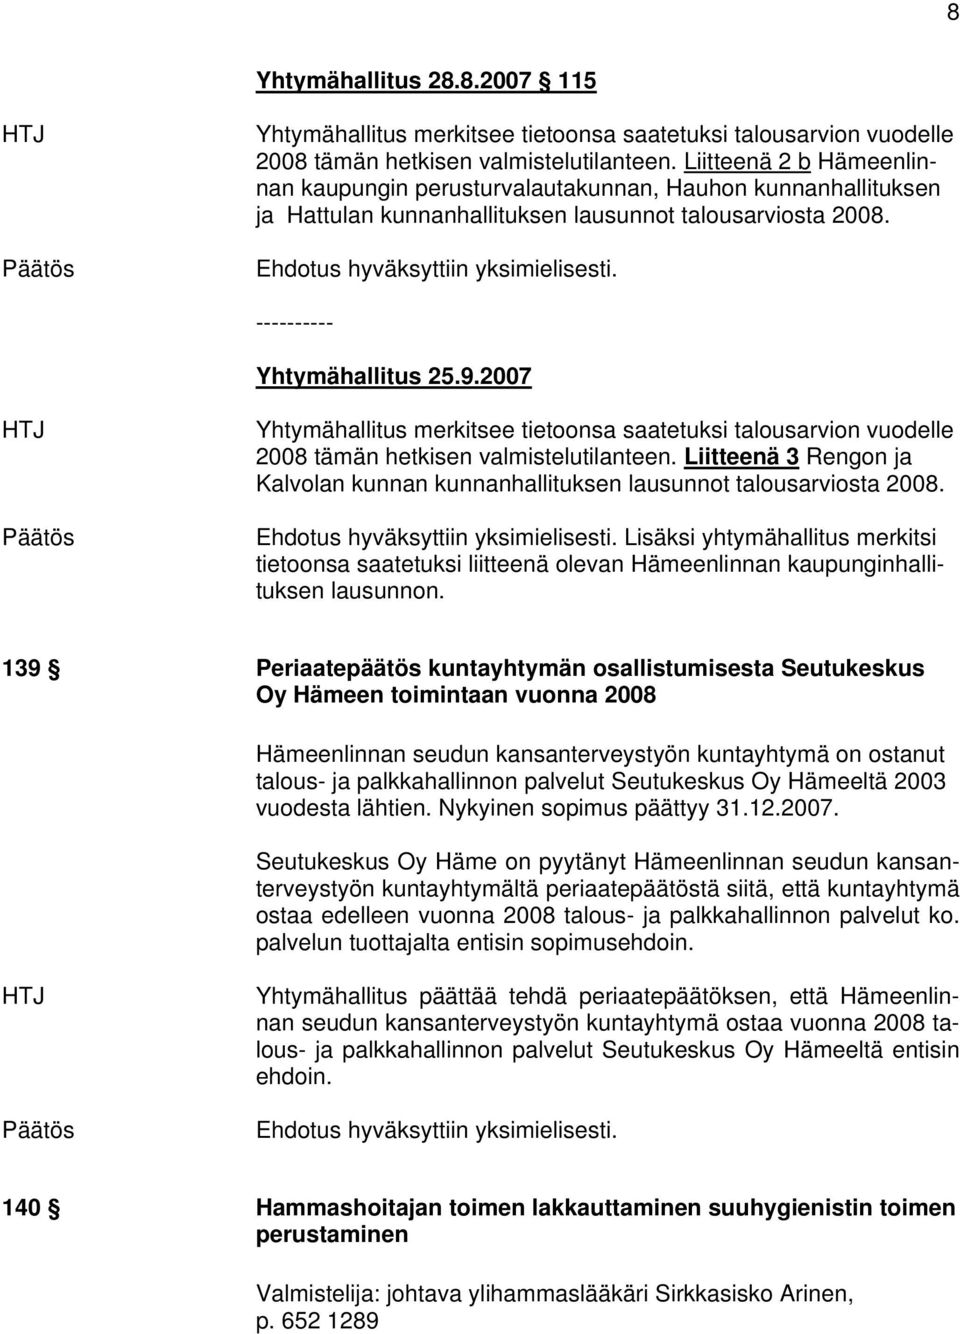 2007 Yhtymähallitus merkitsee tietoonsa saatetuksi talousarvion vuodelle 2008 tämän hetkisen valmistelutilanteen. Liitteenä 3 Rengon ja Kalvolan kunnan kunnanhallituksen lausunnot talousarviosta 2008.